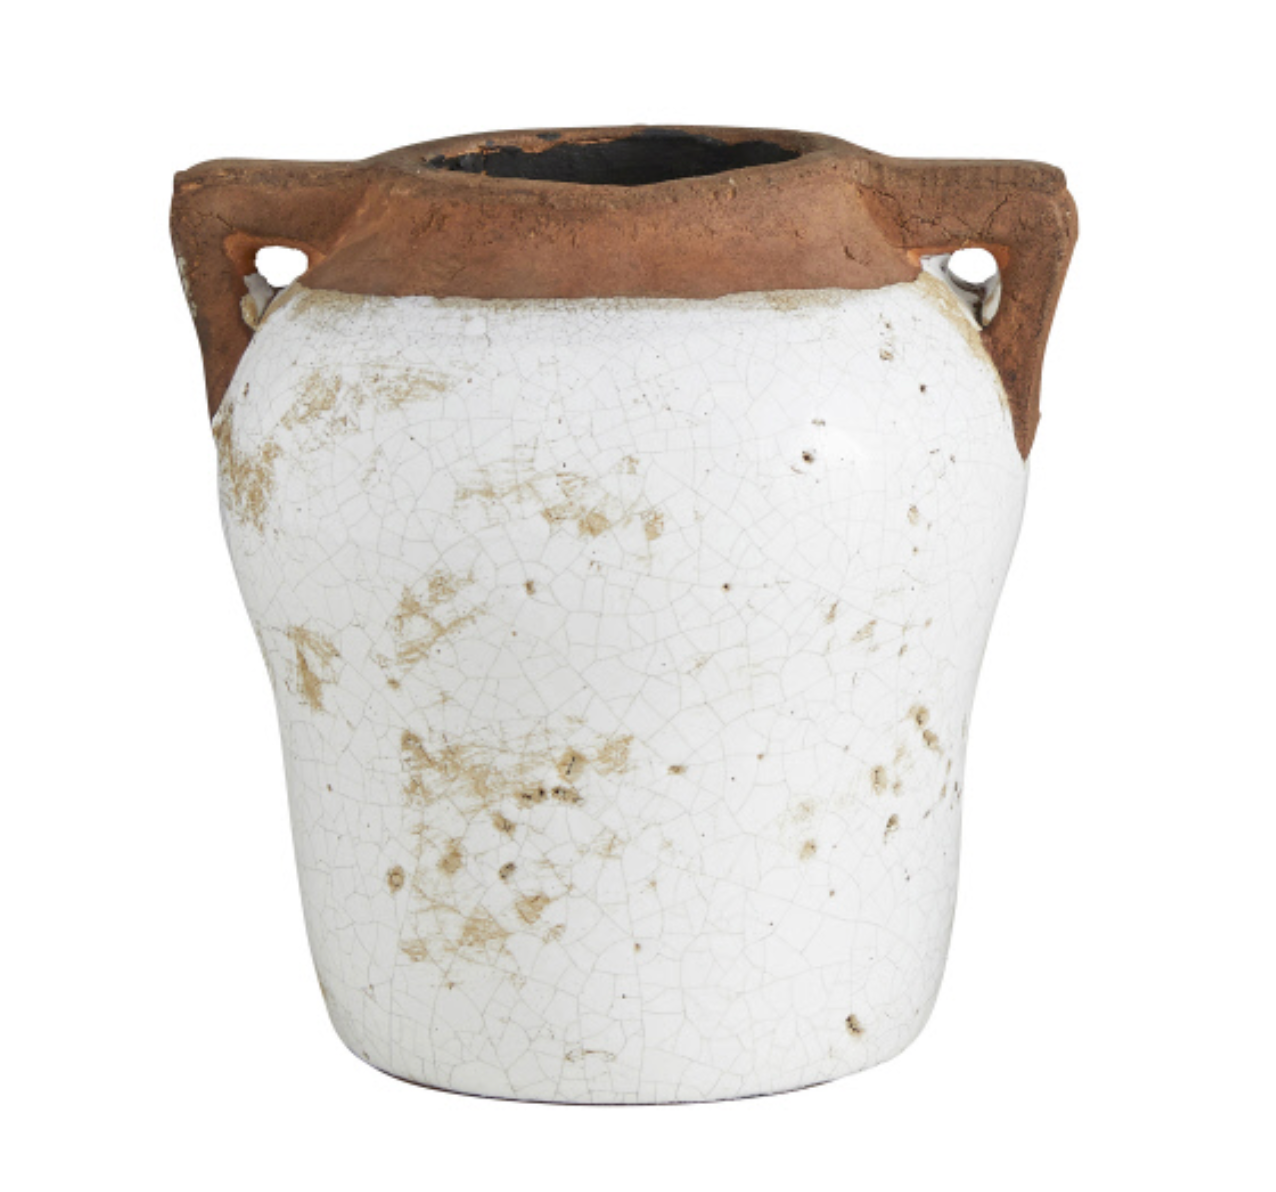 Two-handle Rustic Ceramic Pot